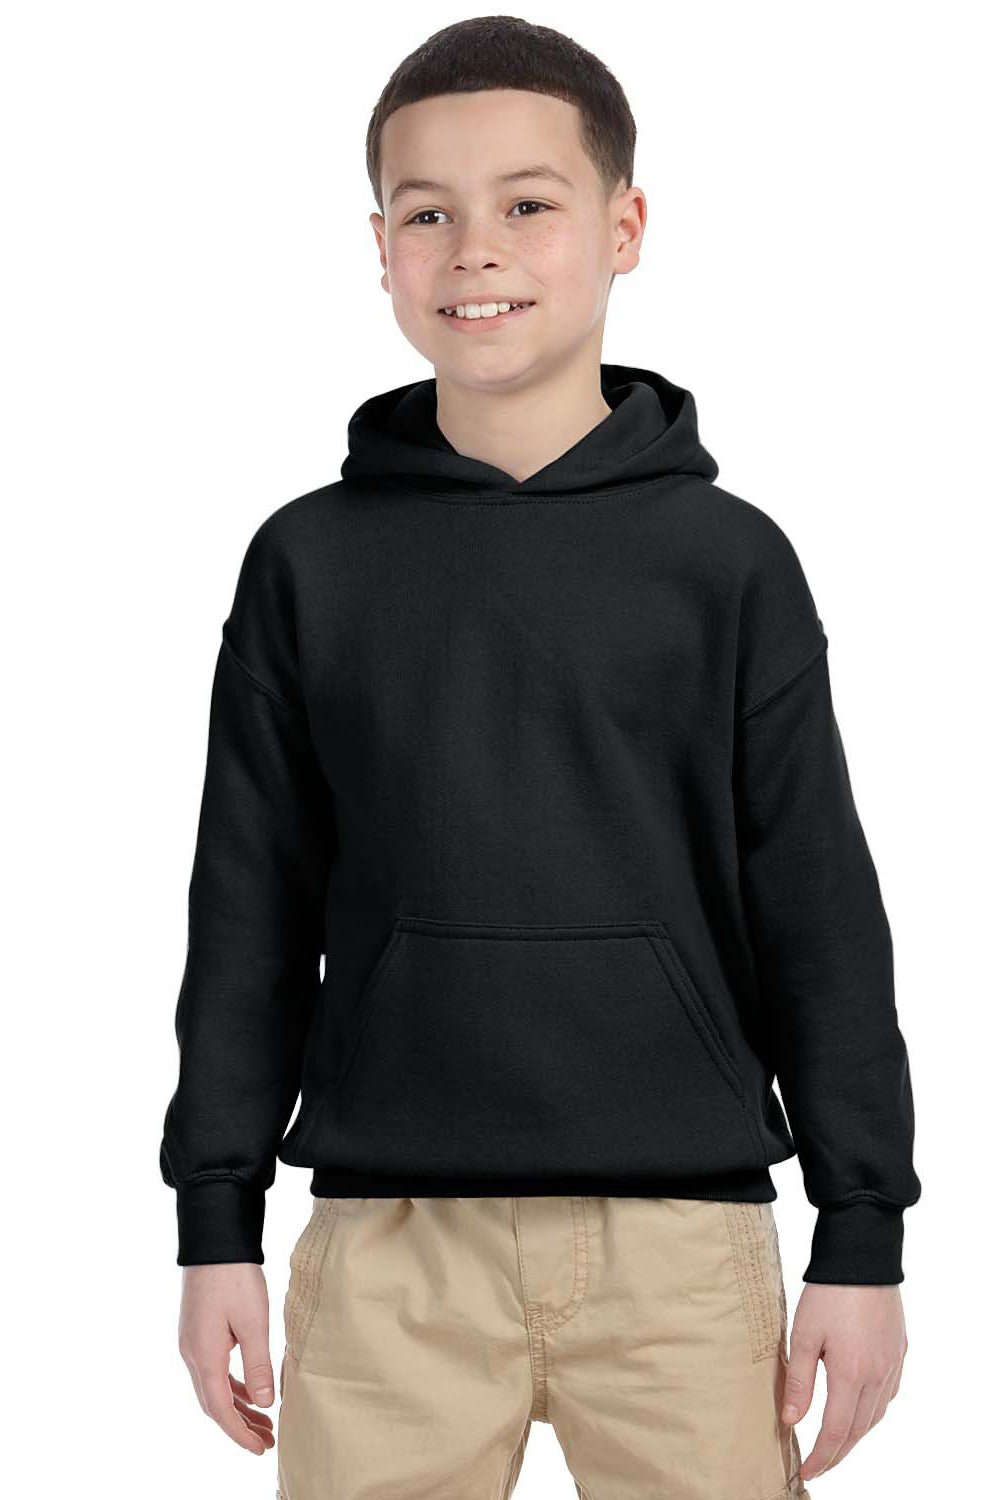 Gildan G185B Youth Hooded Sweatshirt Hoodie Black Front